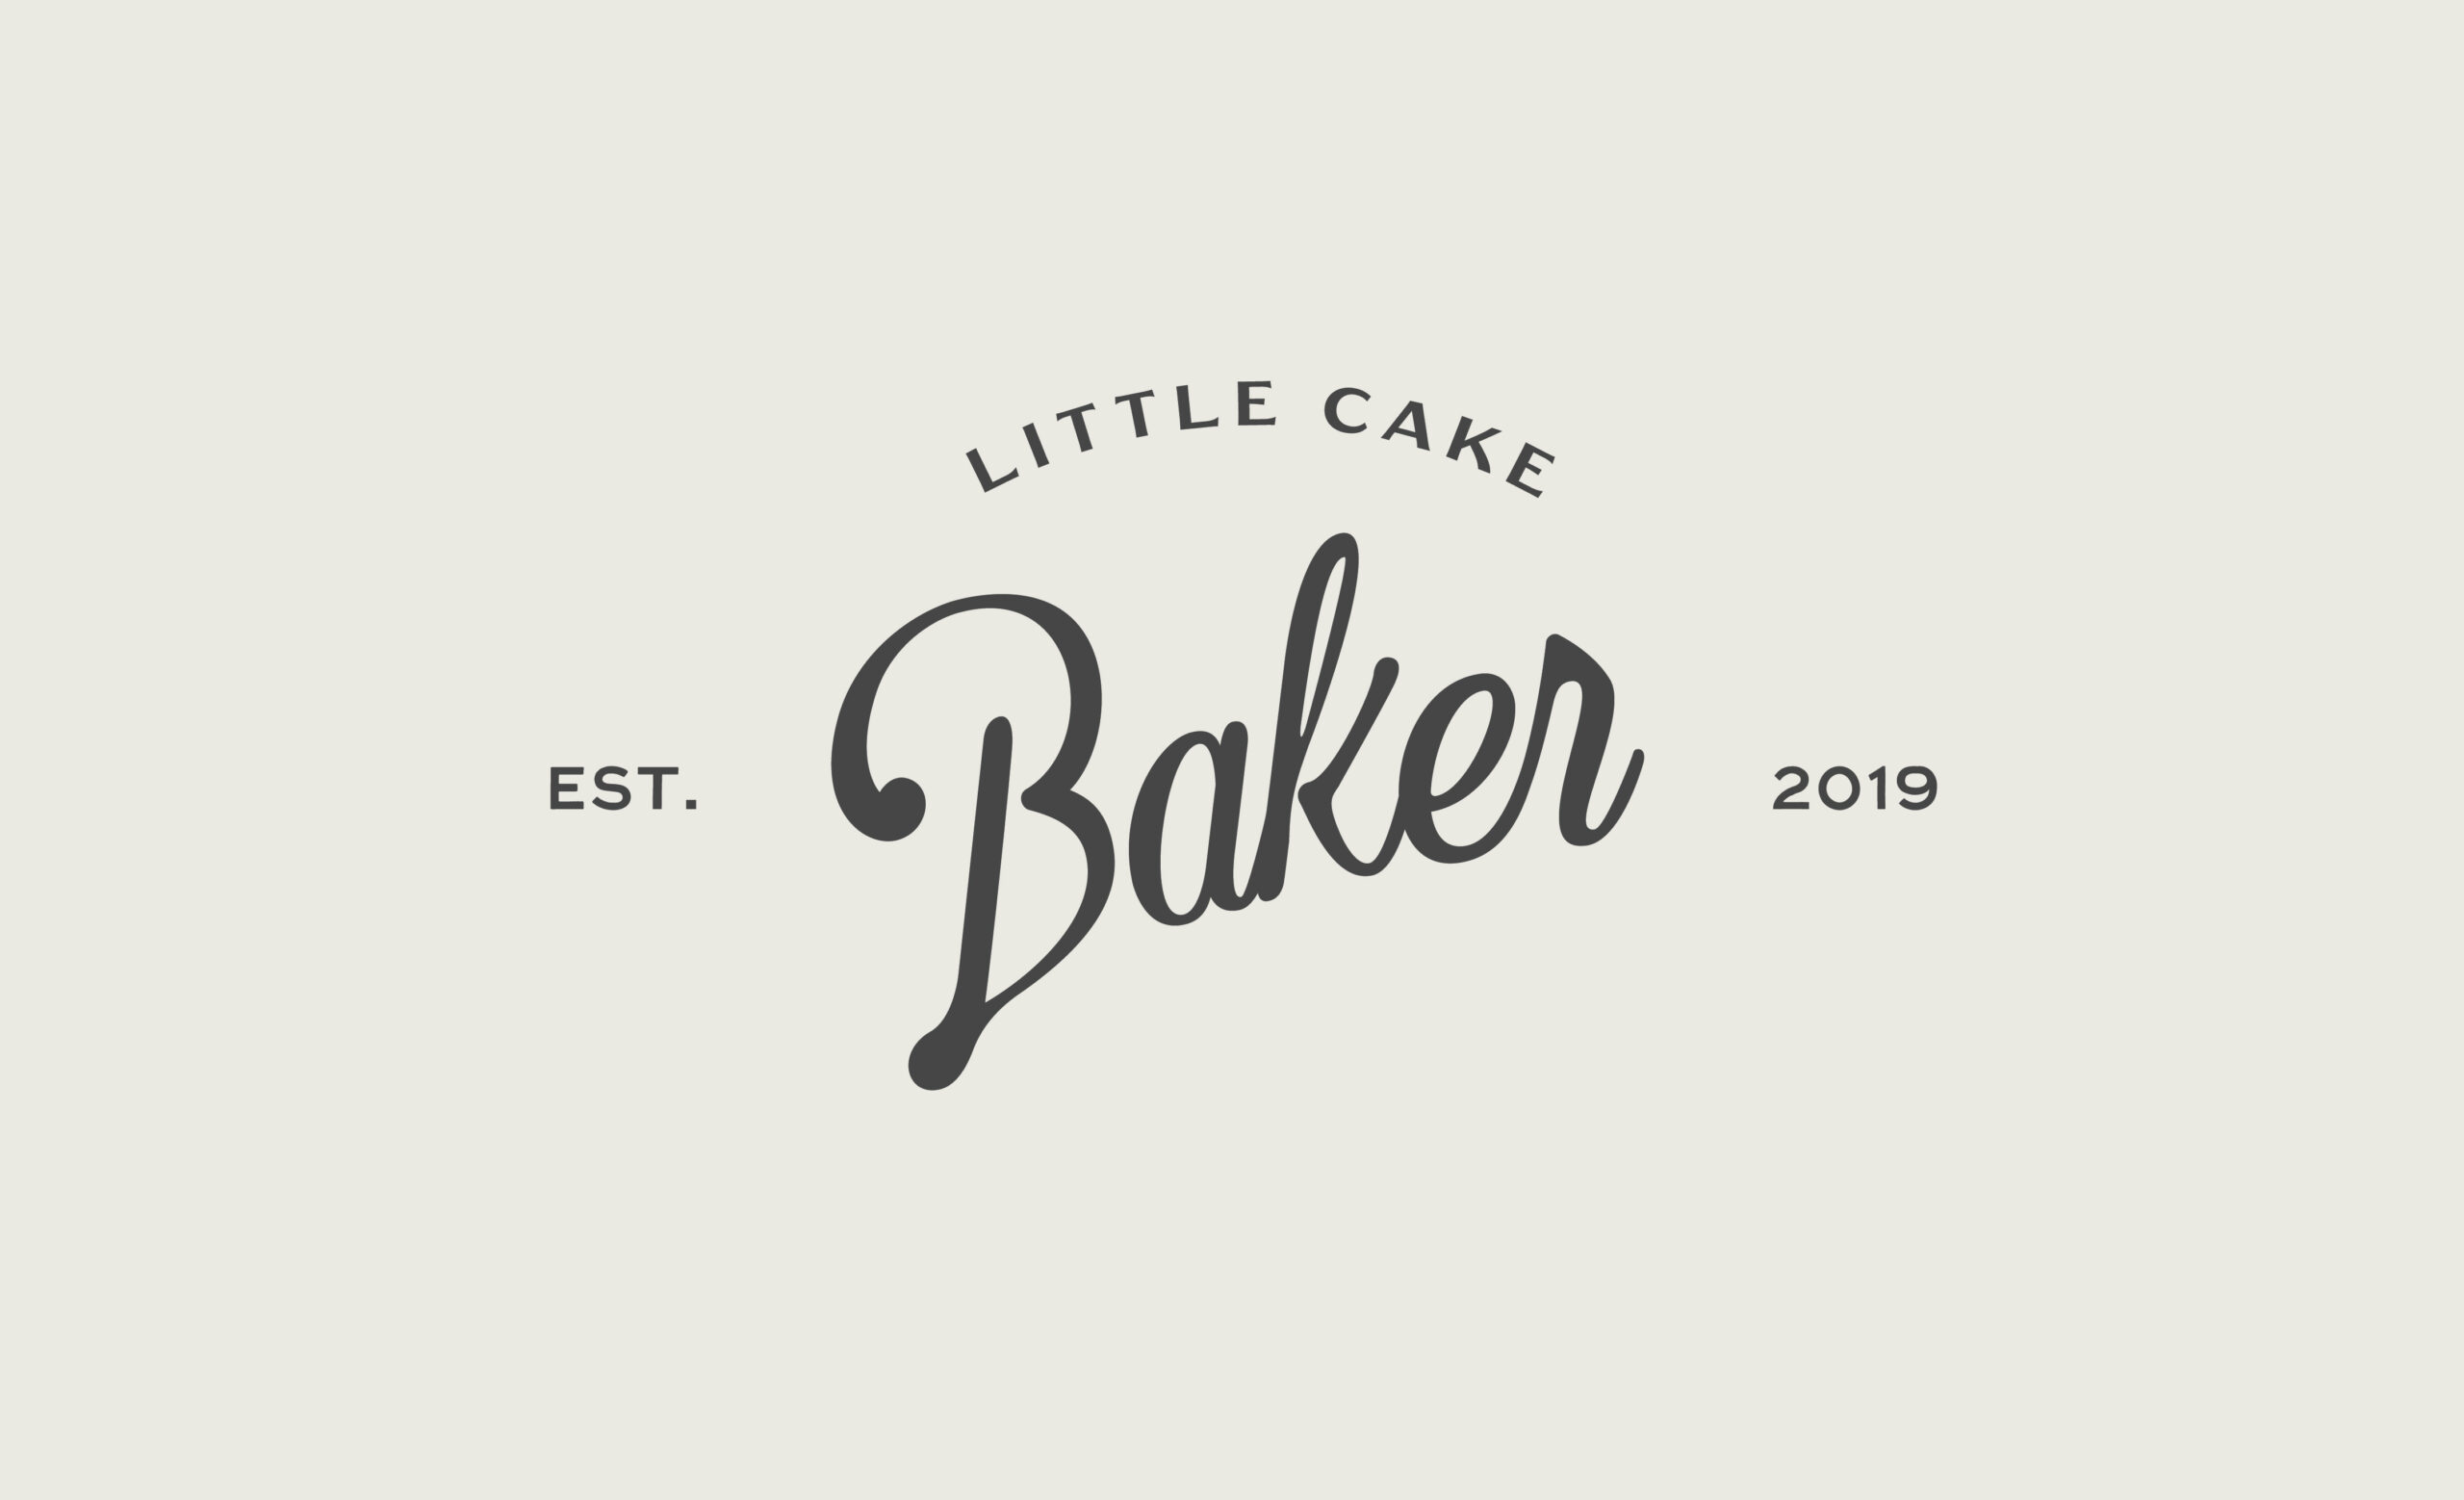 Little_Cake_Baker_Branding_By_Stellen_Design_Logo_Design-02